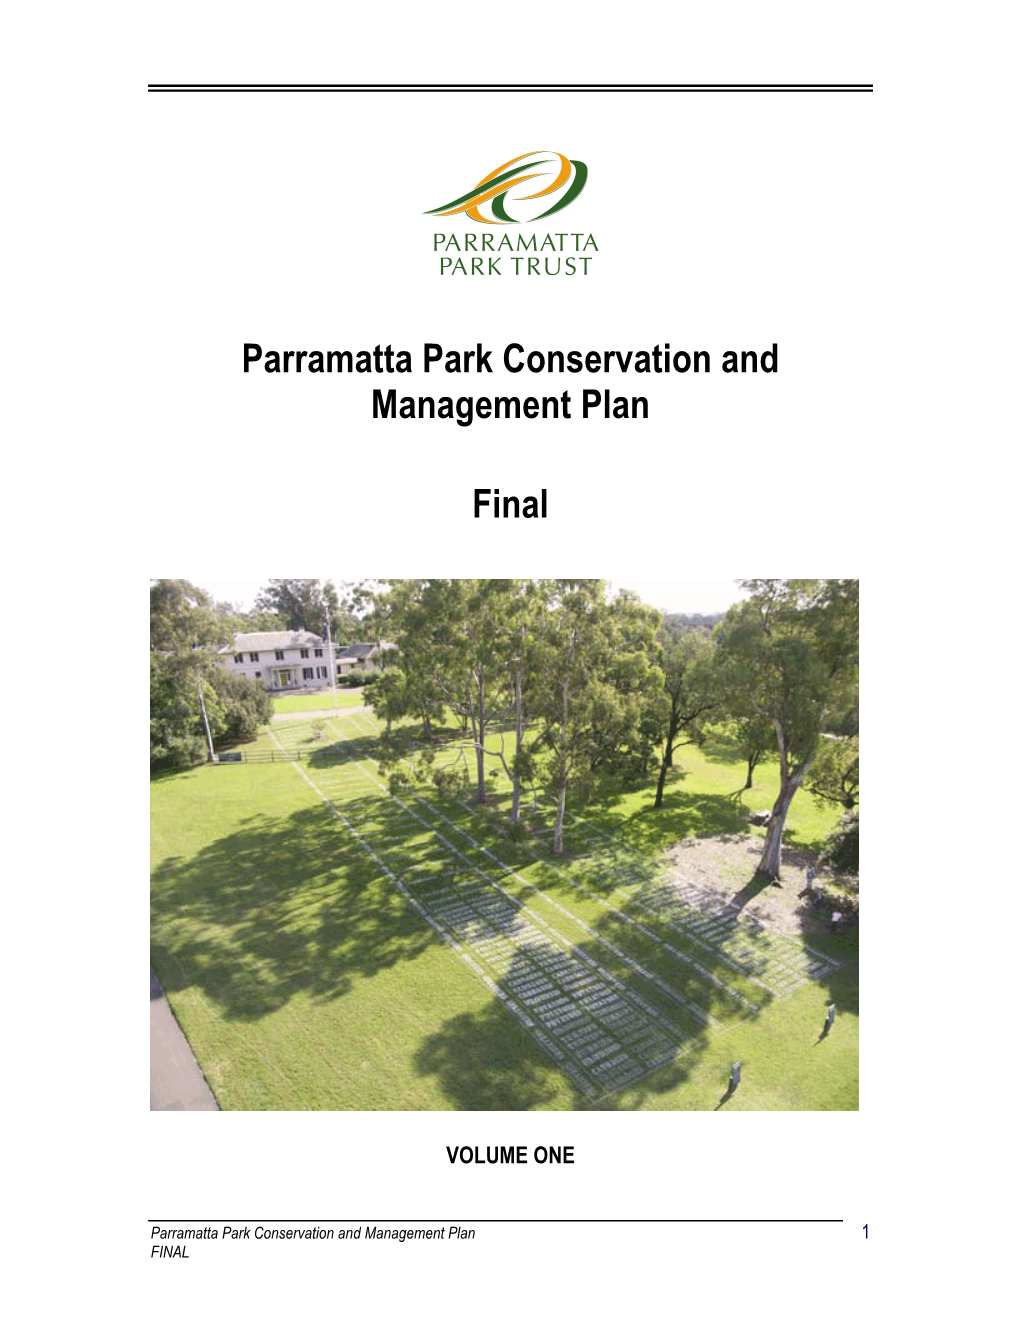 Parramatta Park Conservation and Management Plan Final